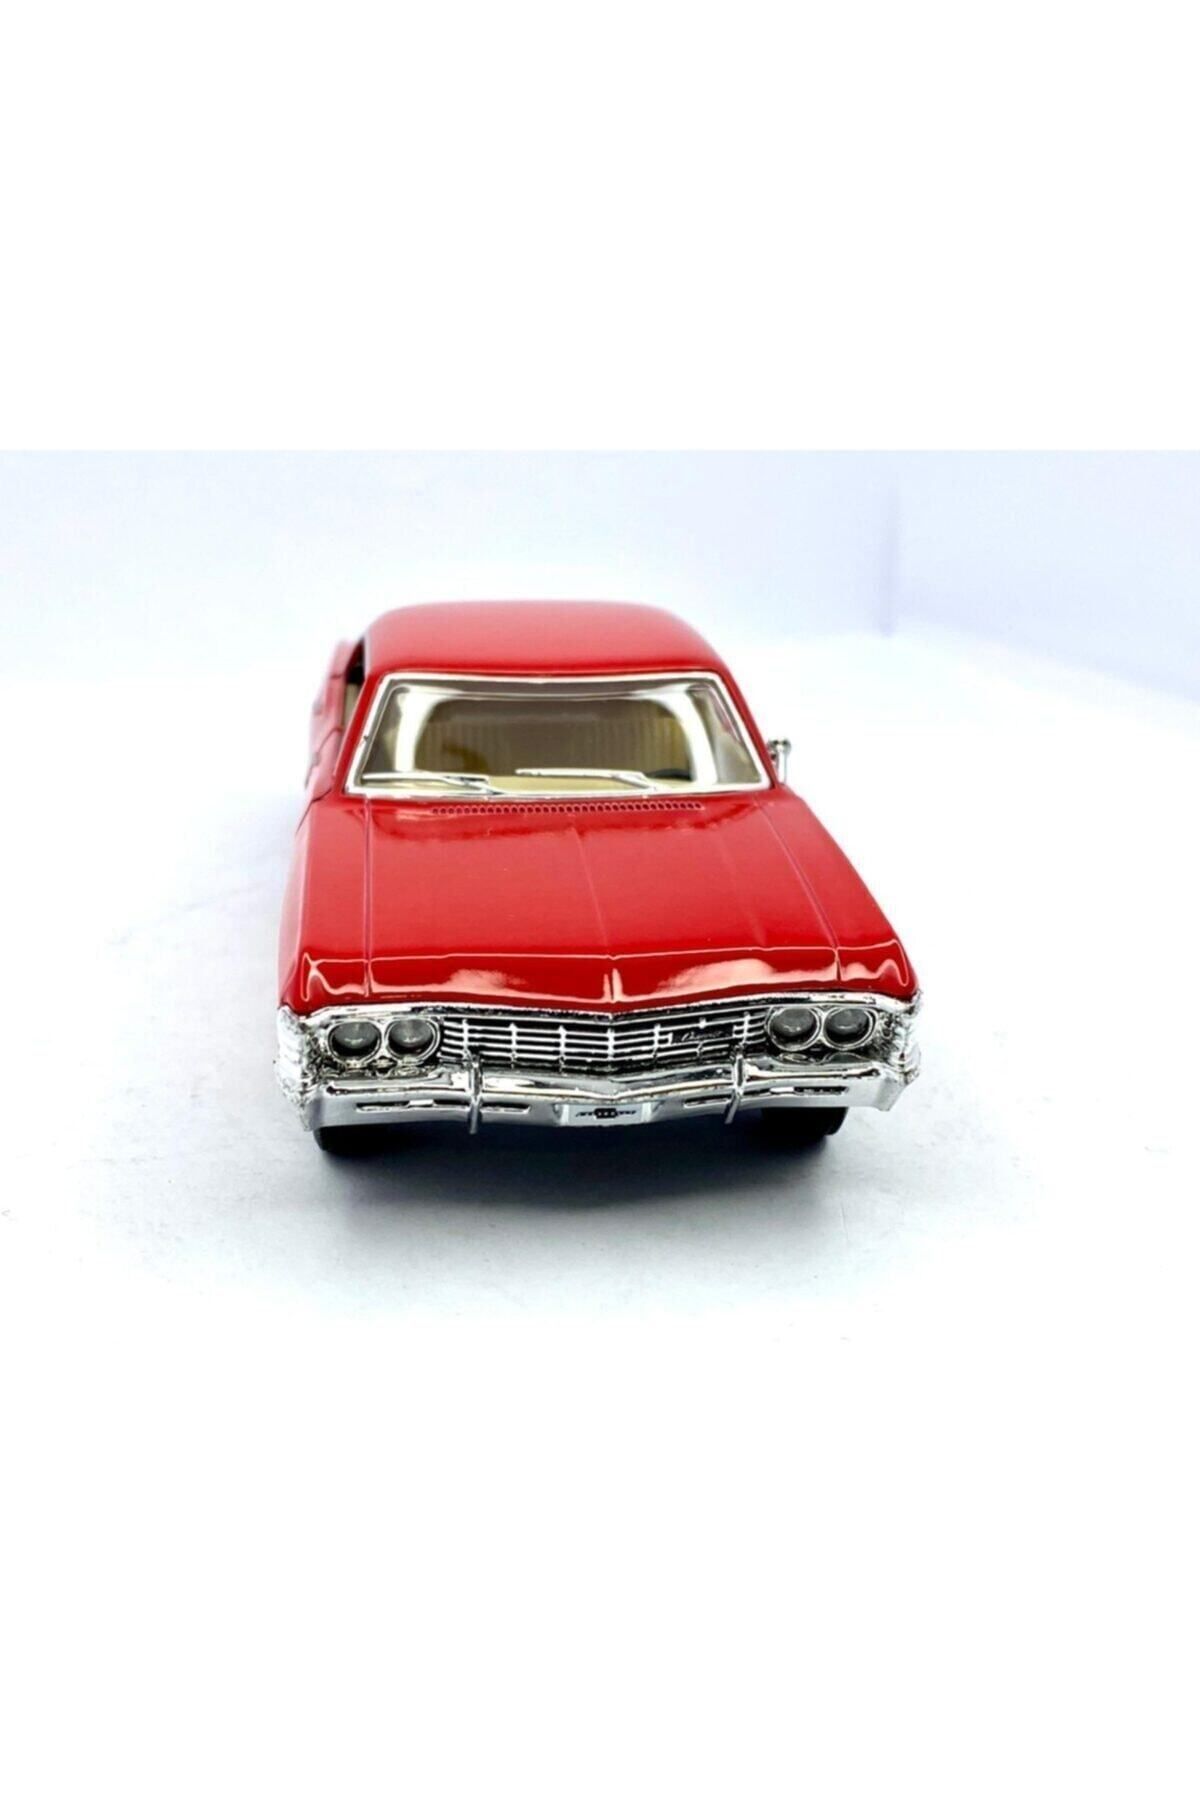 Kinsmart Çek Bırak 1967 Chevrolet Impala ( Kırmızı ) Oyuncak Araba